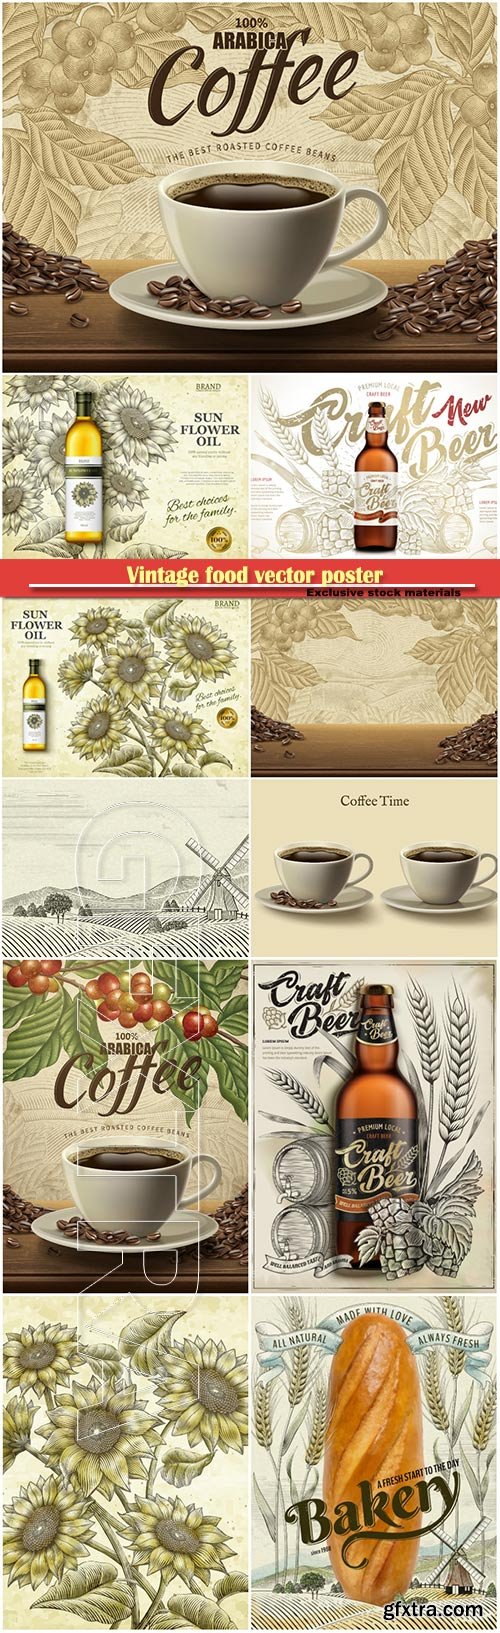 Vintage food vector poster, coffee, bakery, oil, beer